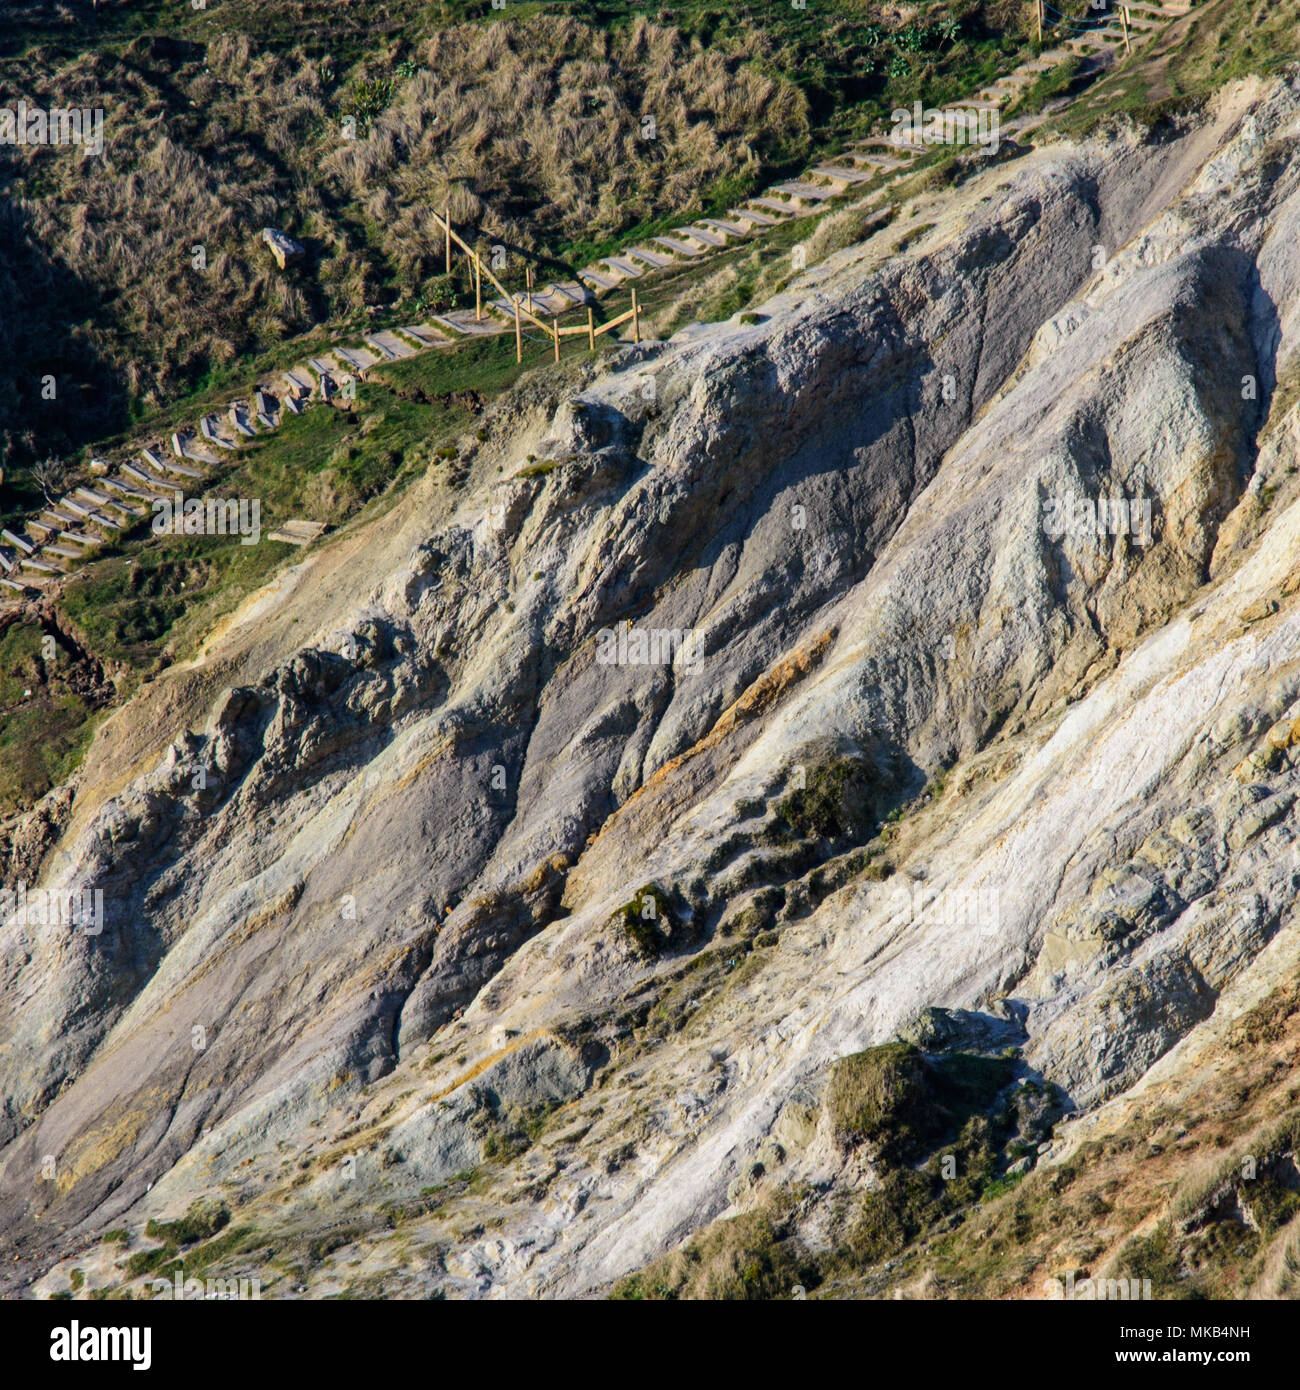 Une bande de roches argile faible forme un glissement entre les falaises de calcaire plus dur à Durdle Door, un honeypot touristique populaire sur l'emplacement du Dorset Co Jurassique Banque D'Images